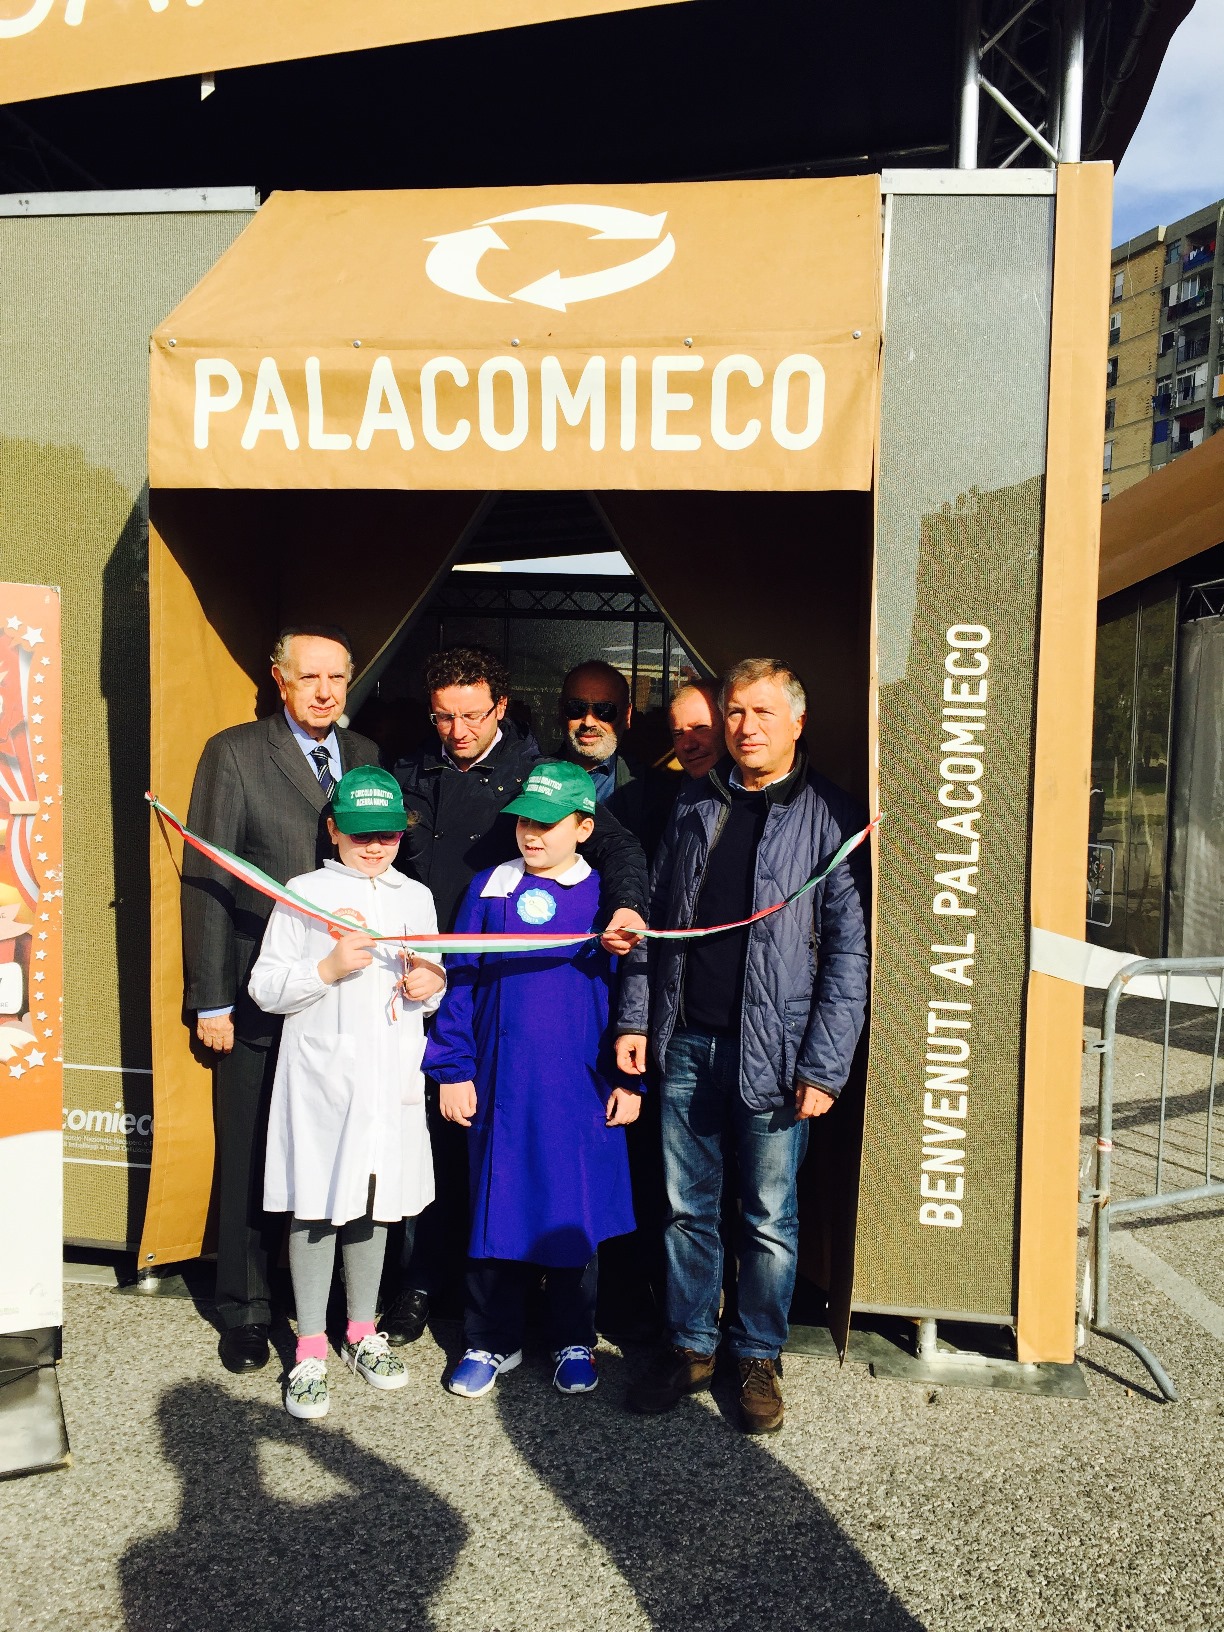 Acerra ospita la terza tappa del PalaComieco organizzato da Comieco - La Rampa (Comunicati Stampa) (Registrazione) (Blog)